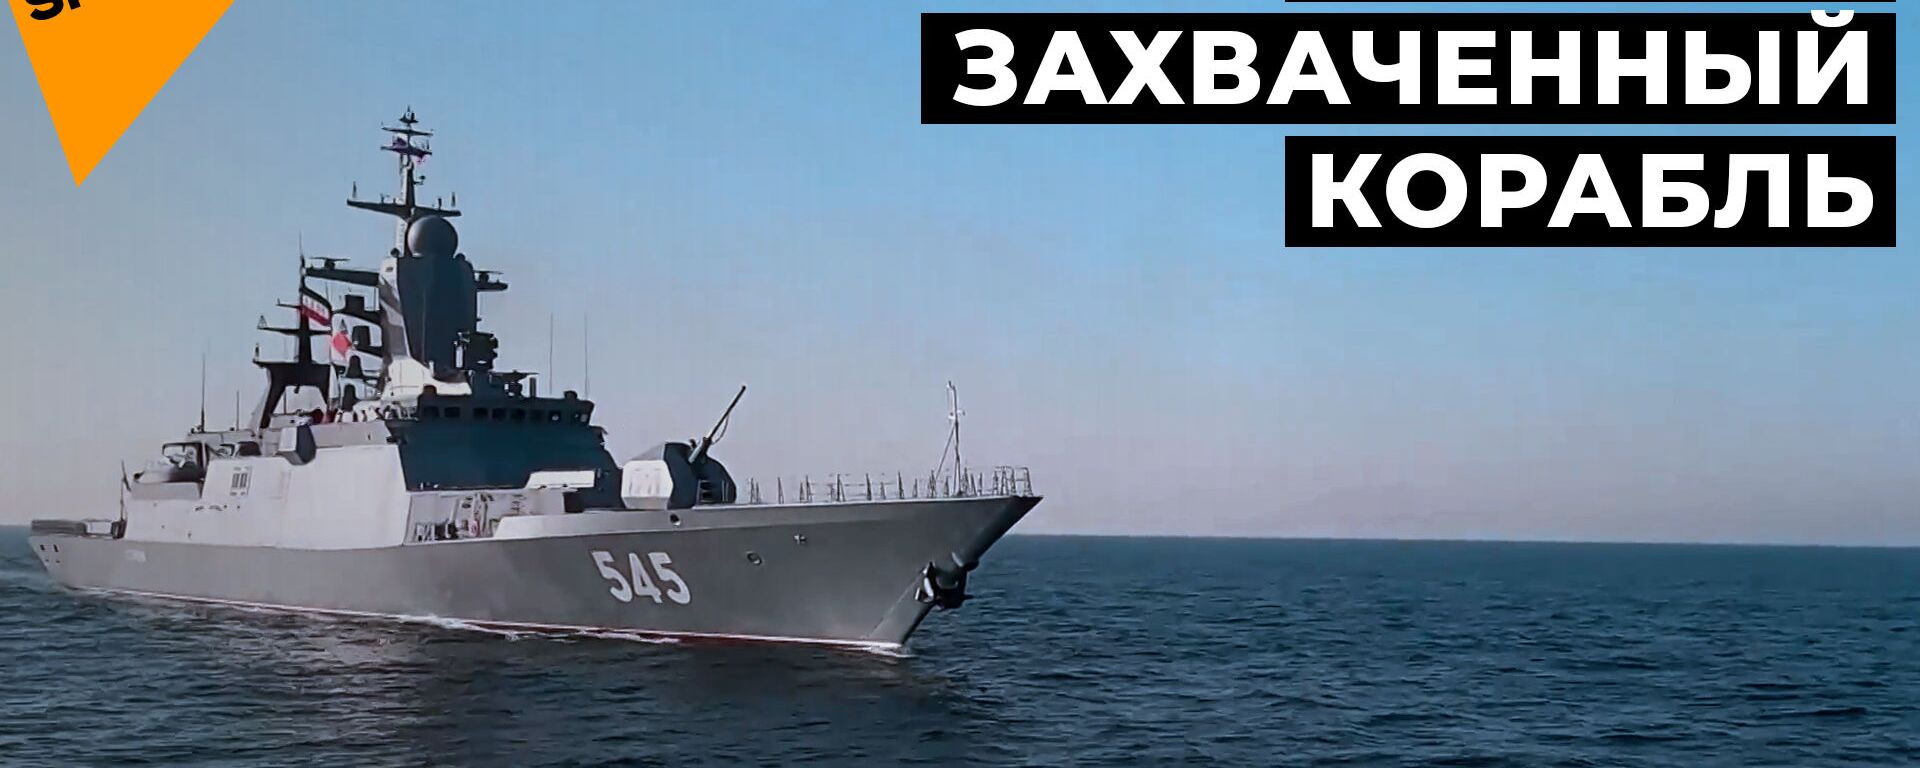 Военные России и Ирана отбили судно у пиратов: учения в Индийском океане - Sputnik Латвия, 1920, 19.02.2021